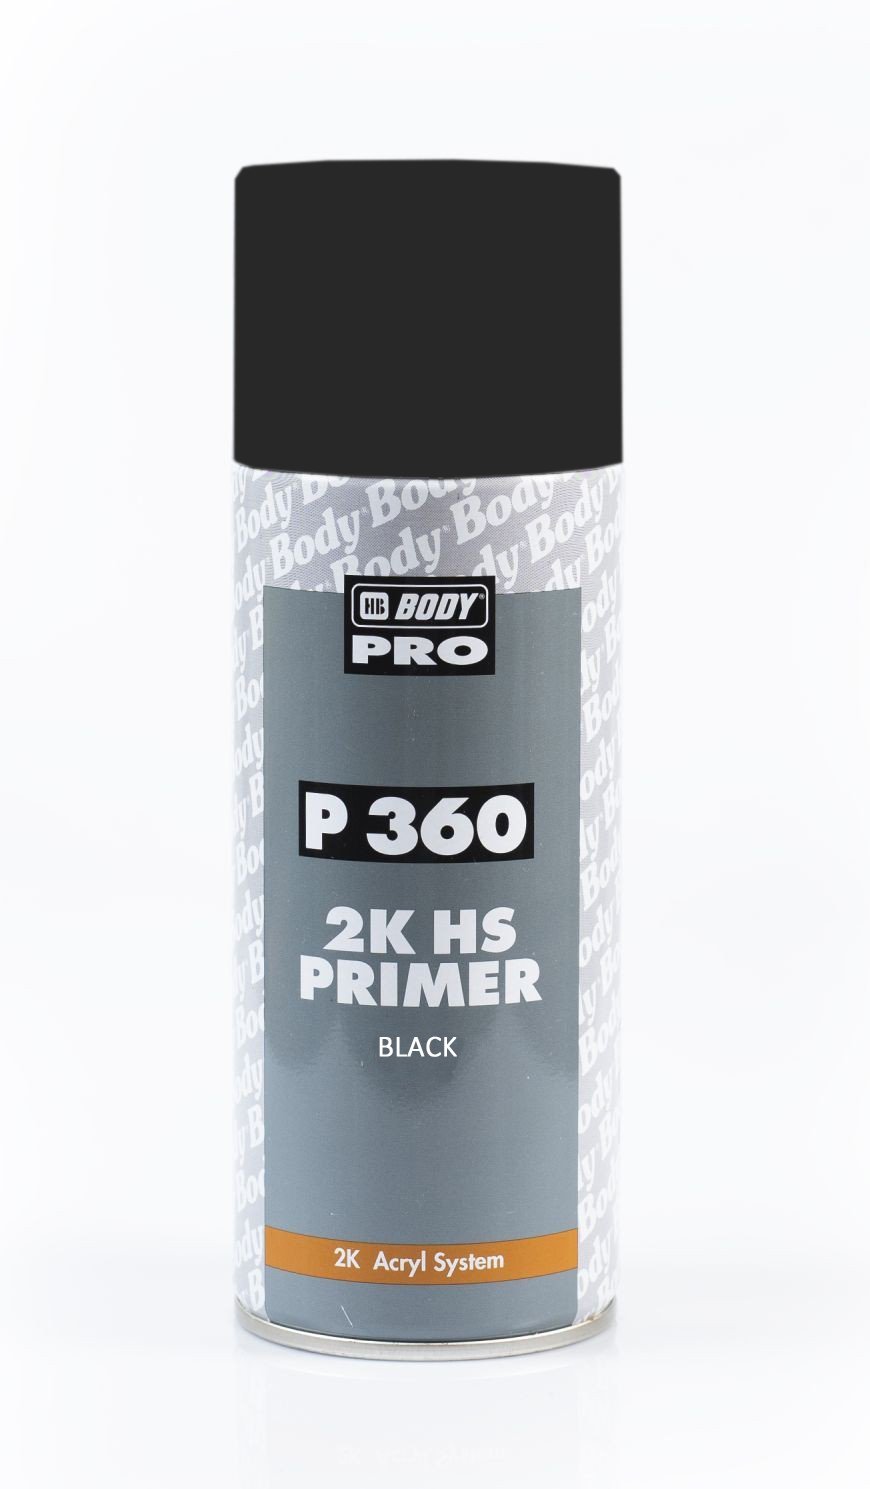 HB Body P360 2K HS Primer Filler Spray Paint Black Aerosol 400mL